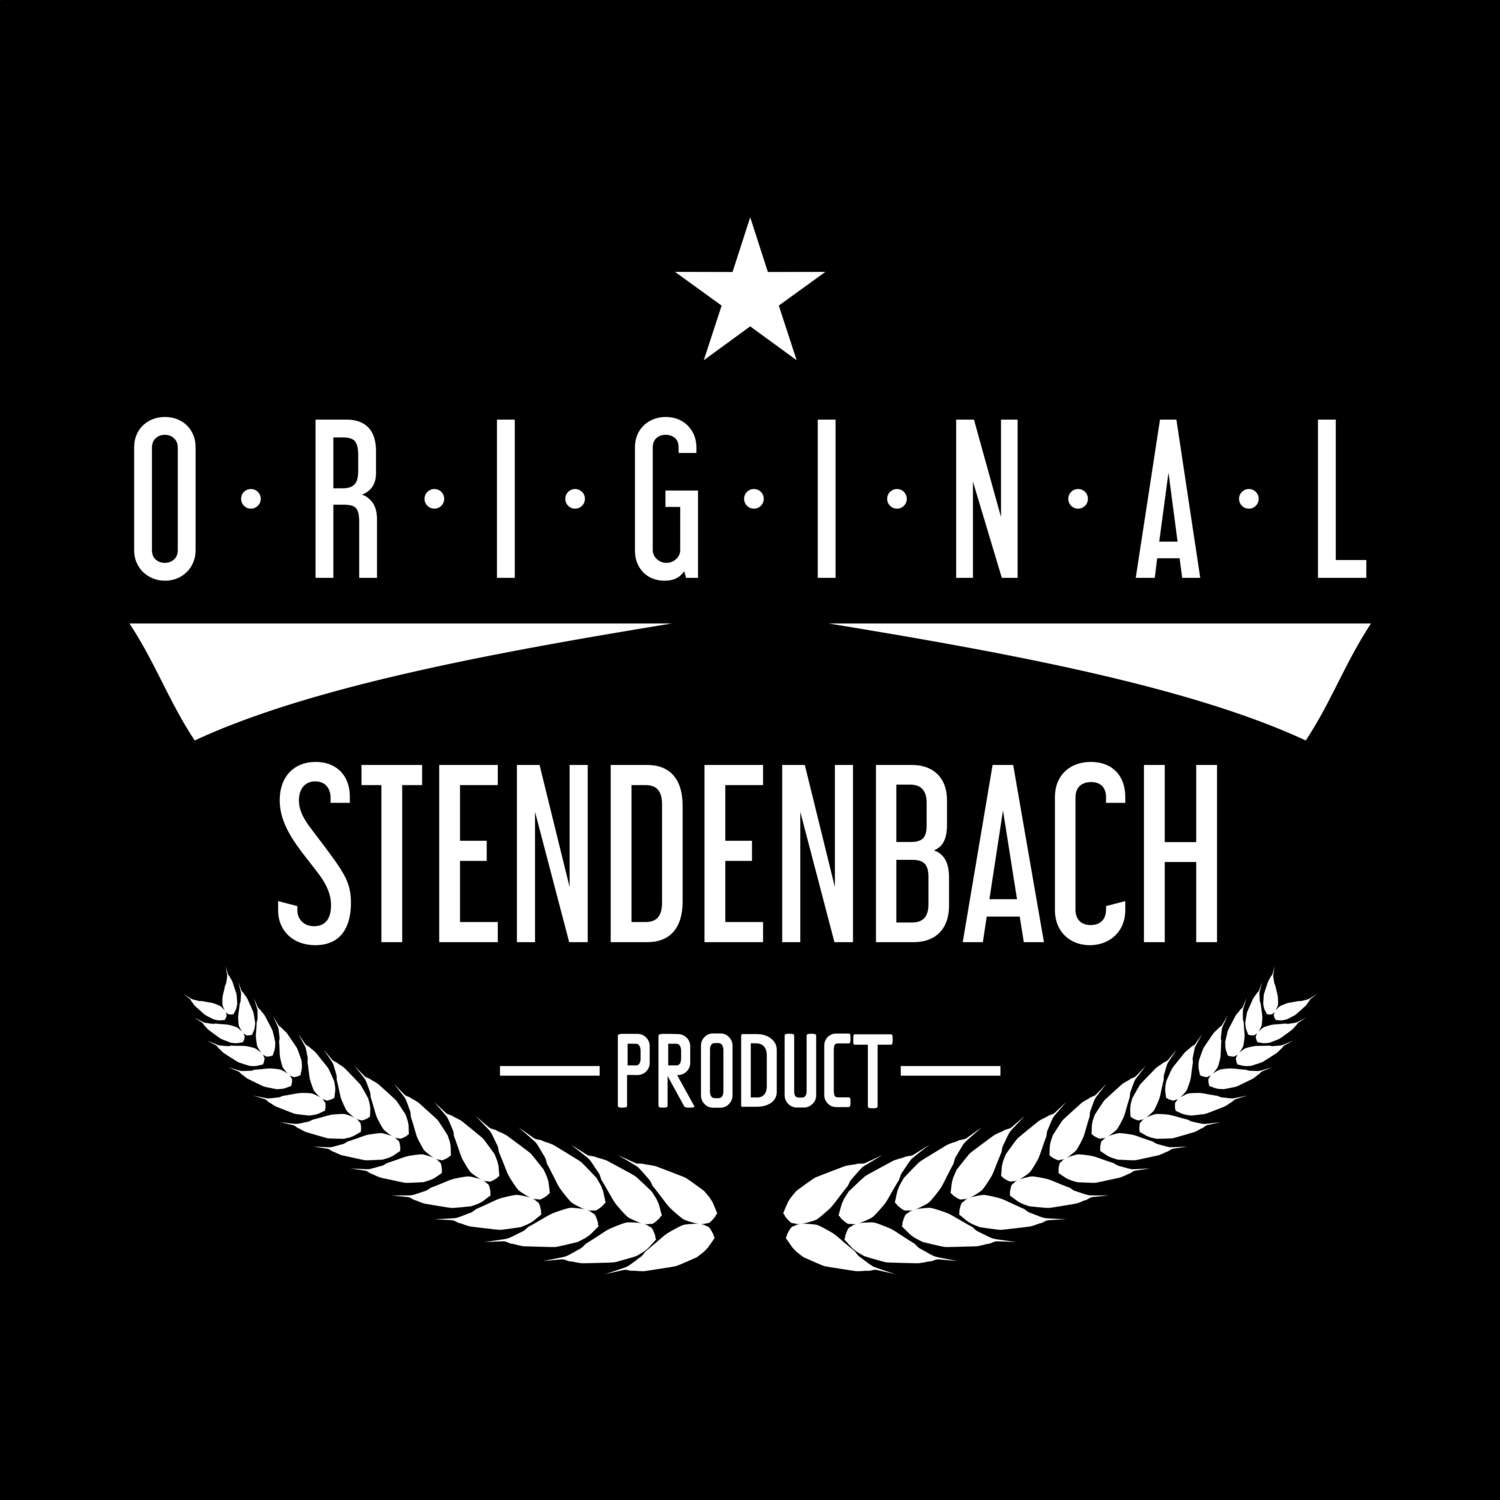 Stendenbach T-Shirt »Original Product«